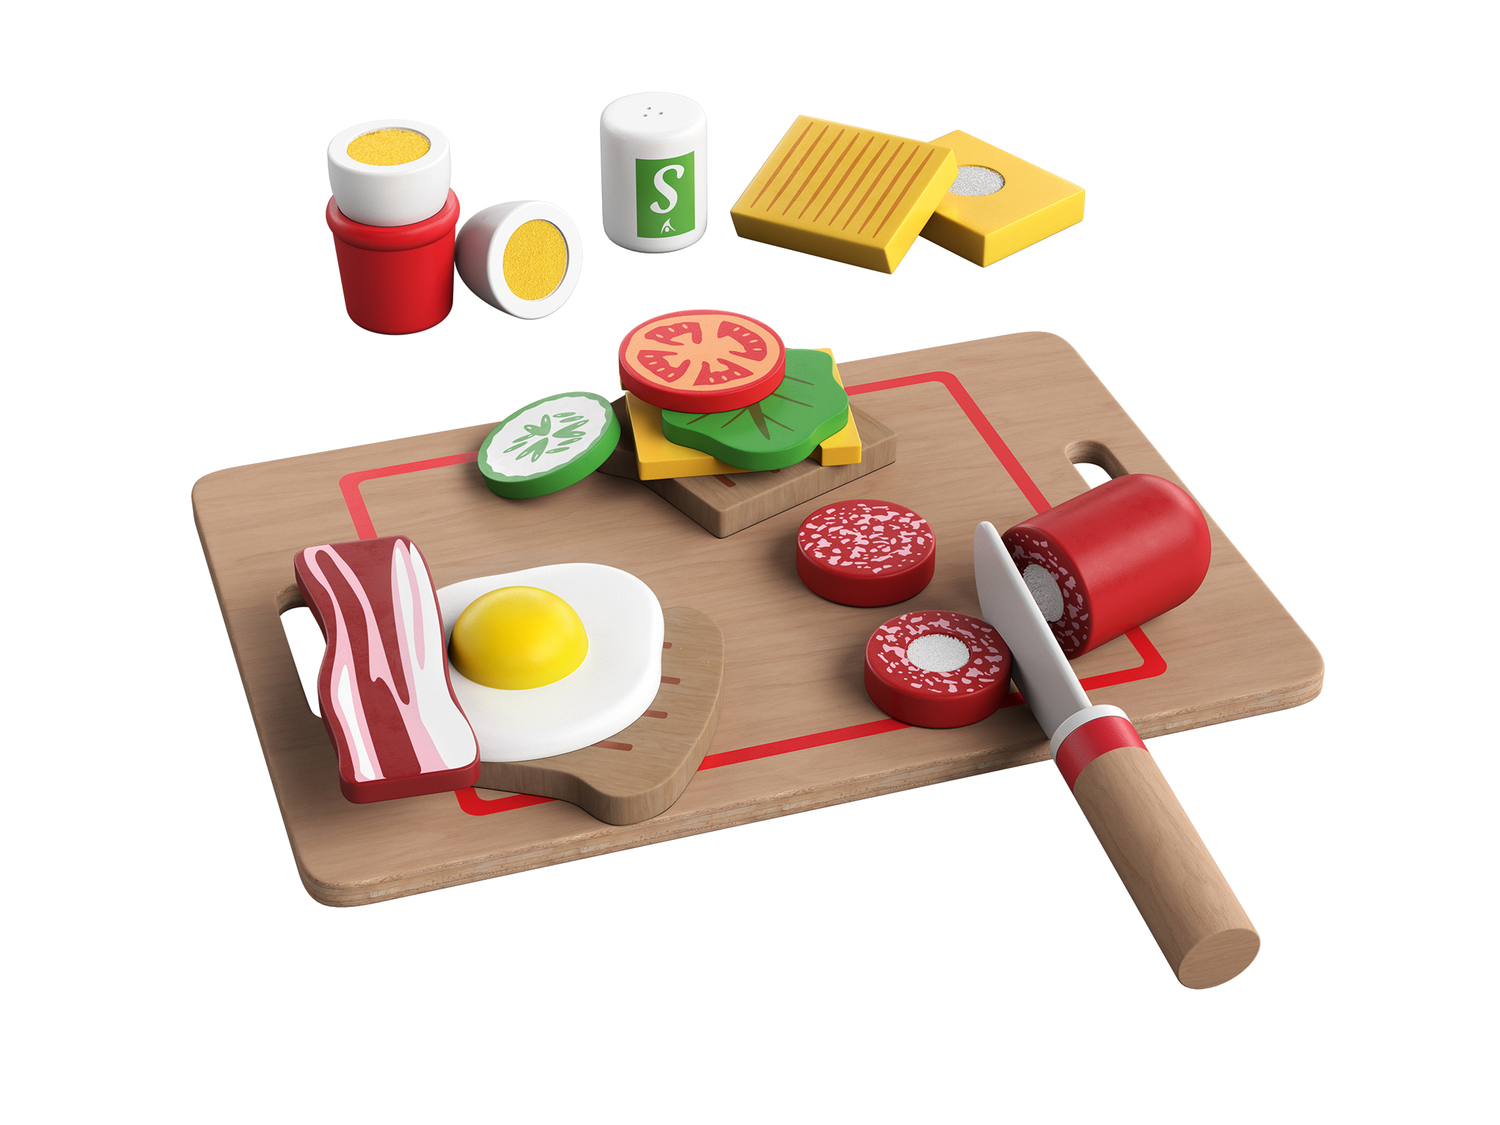 Set alimenti giocattolo in legno Playtive, prezzo 6.99 &#8364; 

Caratteristiche

- ...